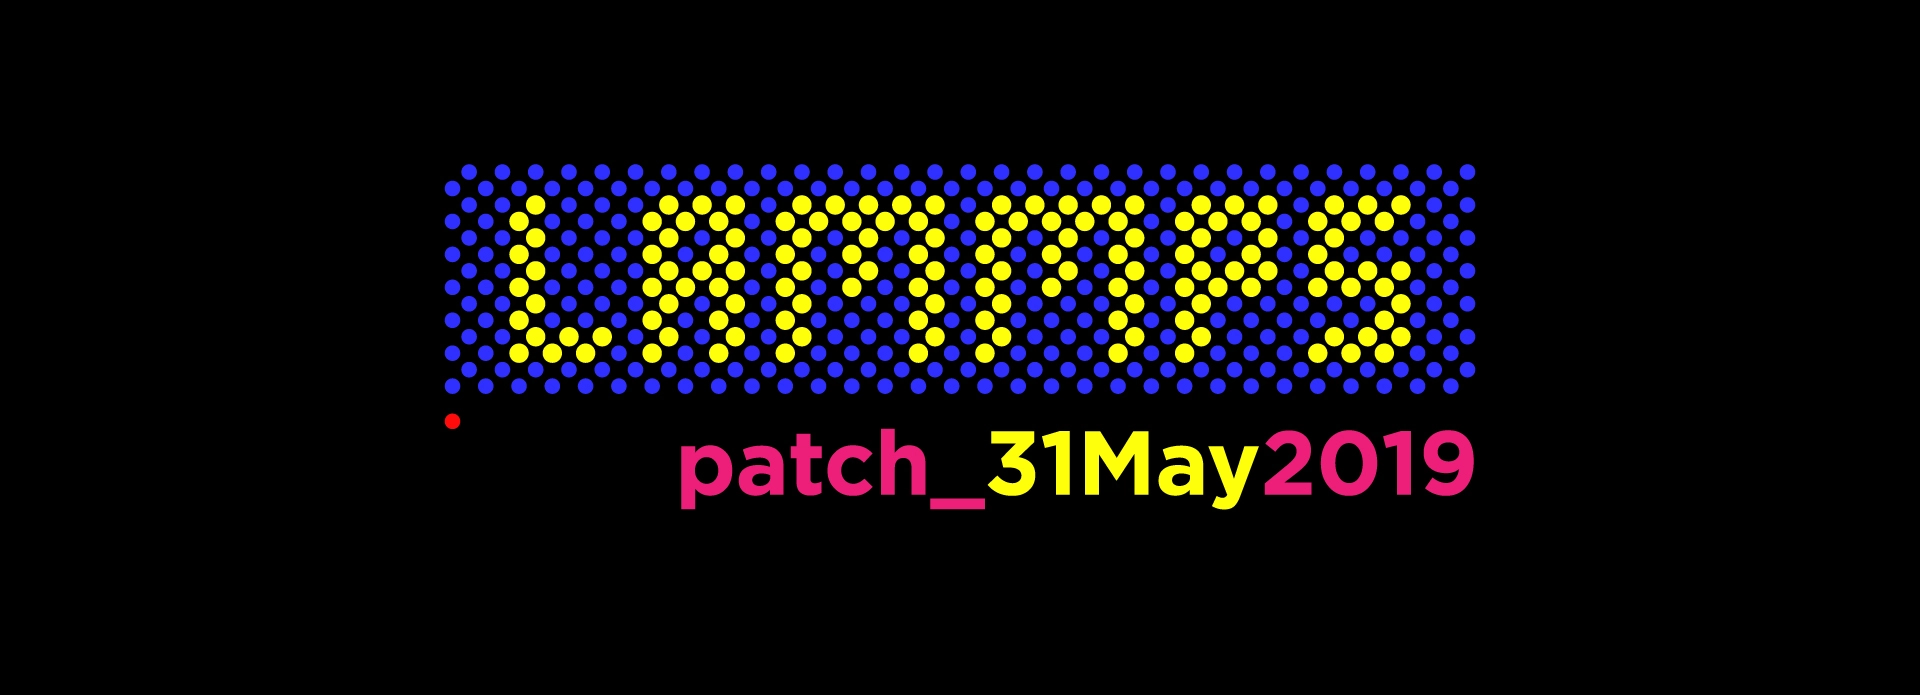 LAMMPS-patch-Mar29_2019.jpg